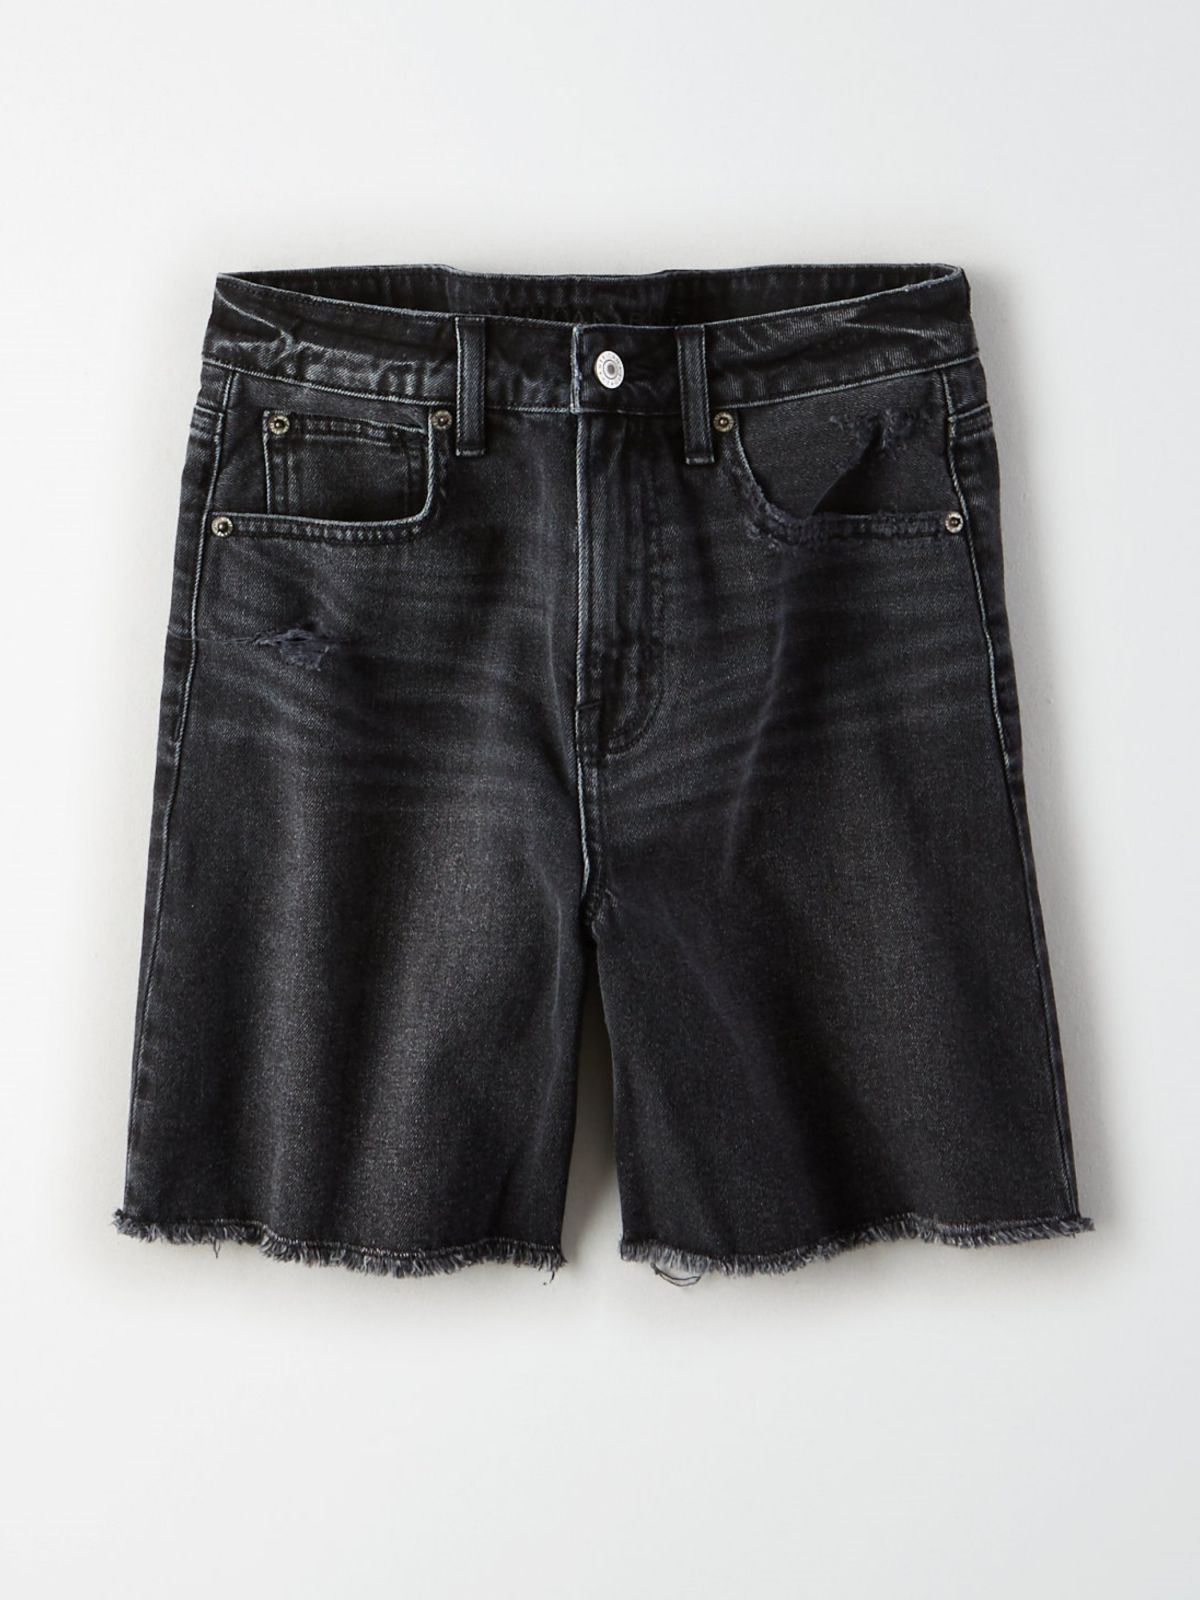  ג'ינס קצר בשטיפה כהה עם פרנזים / נשים של AMERICAN EAGLE